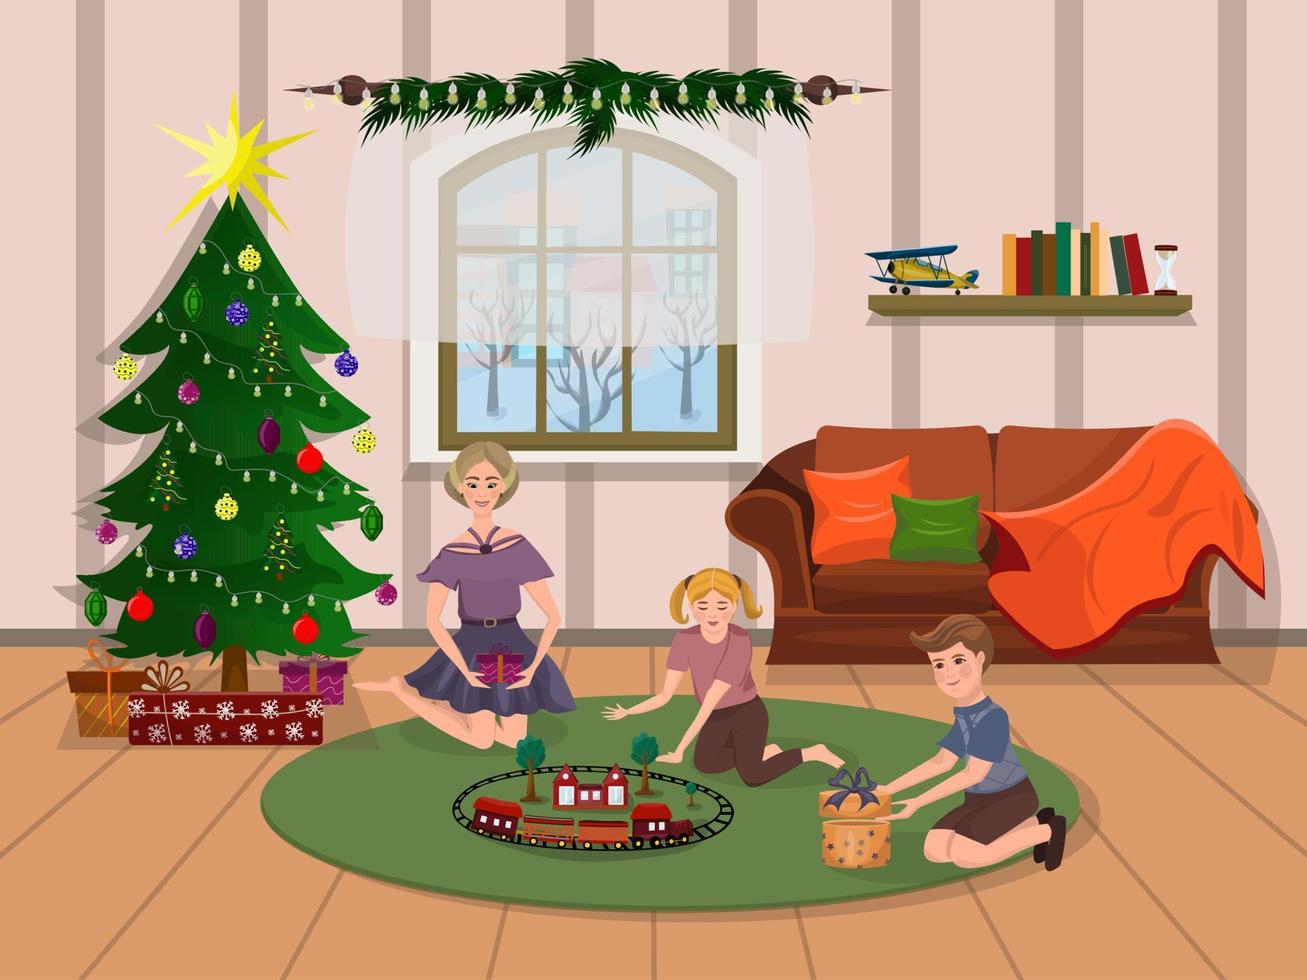 kinderen pakken cadeautjes uit bij de kerstboom in de woonkamer. kerstochtend. vectorillustratie in cartoon-stijl vector